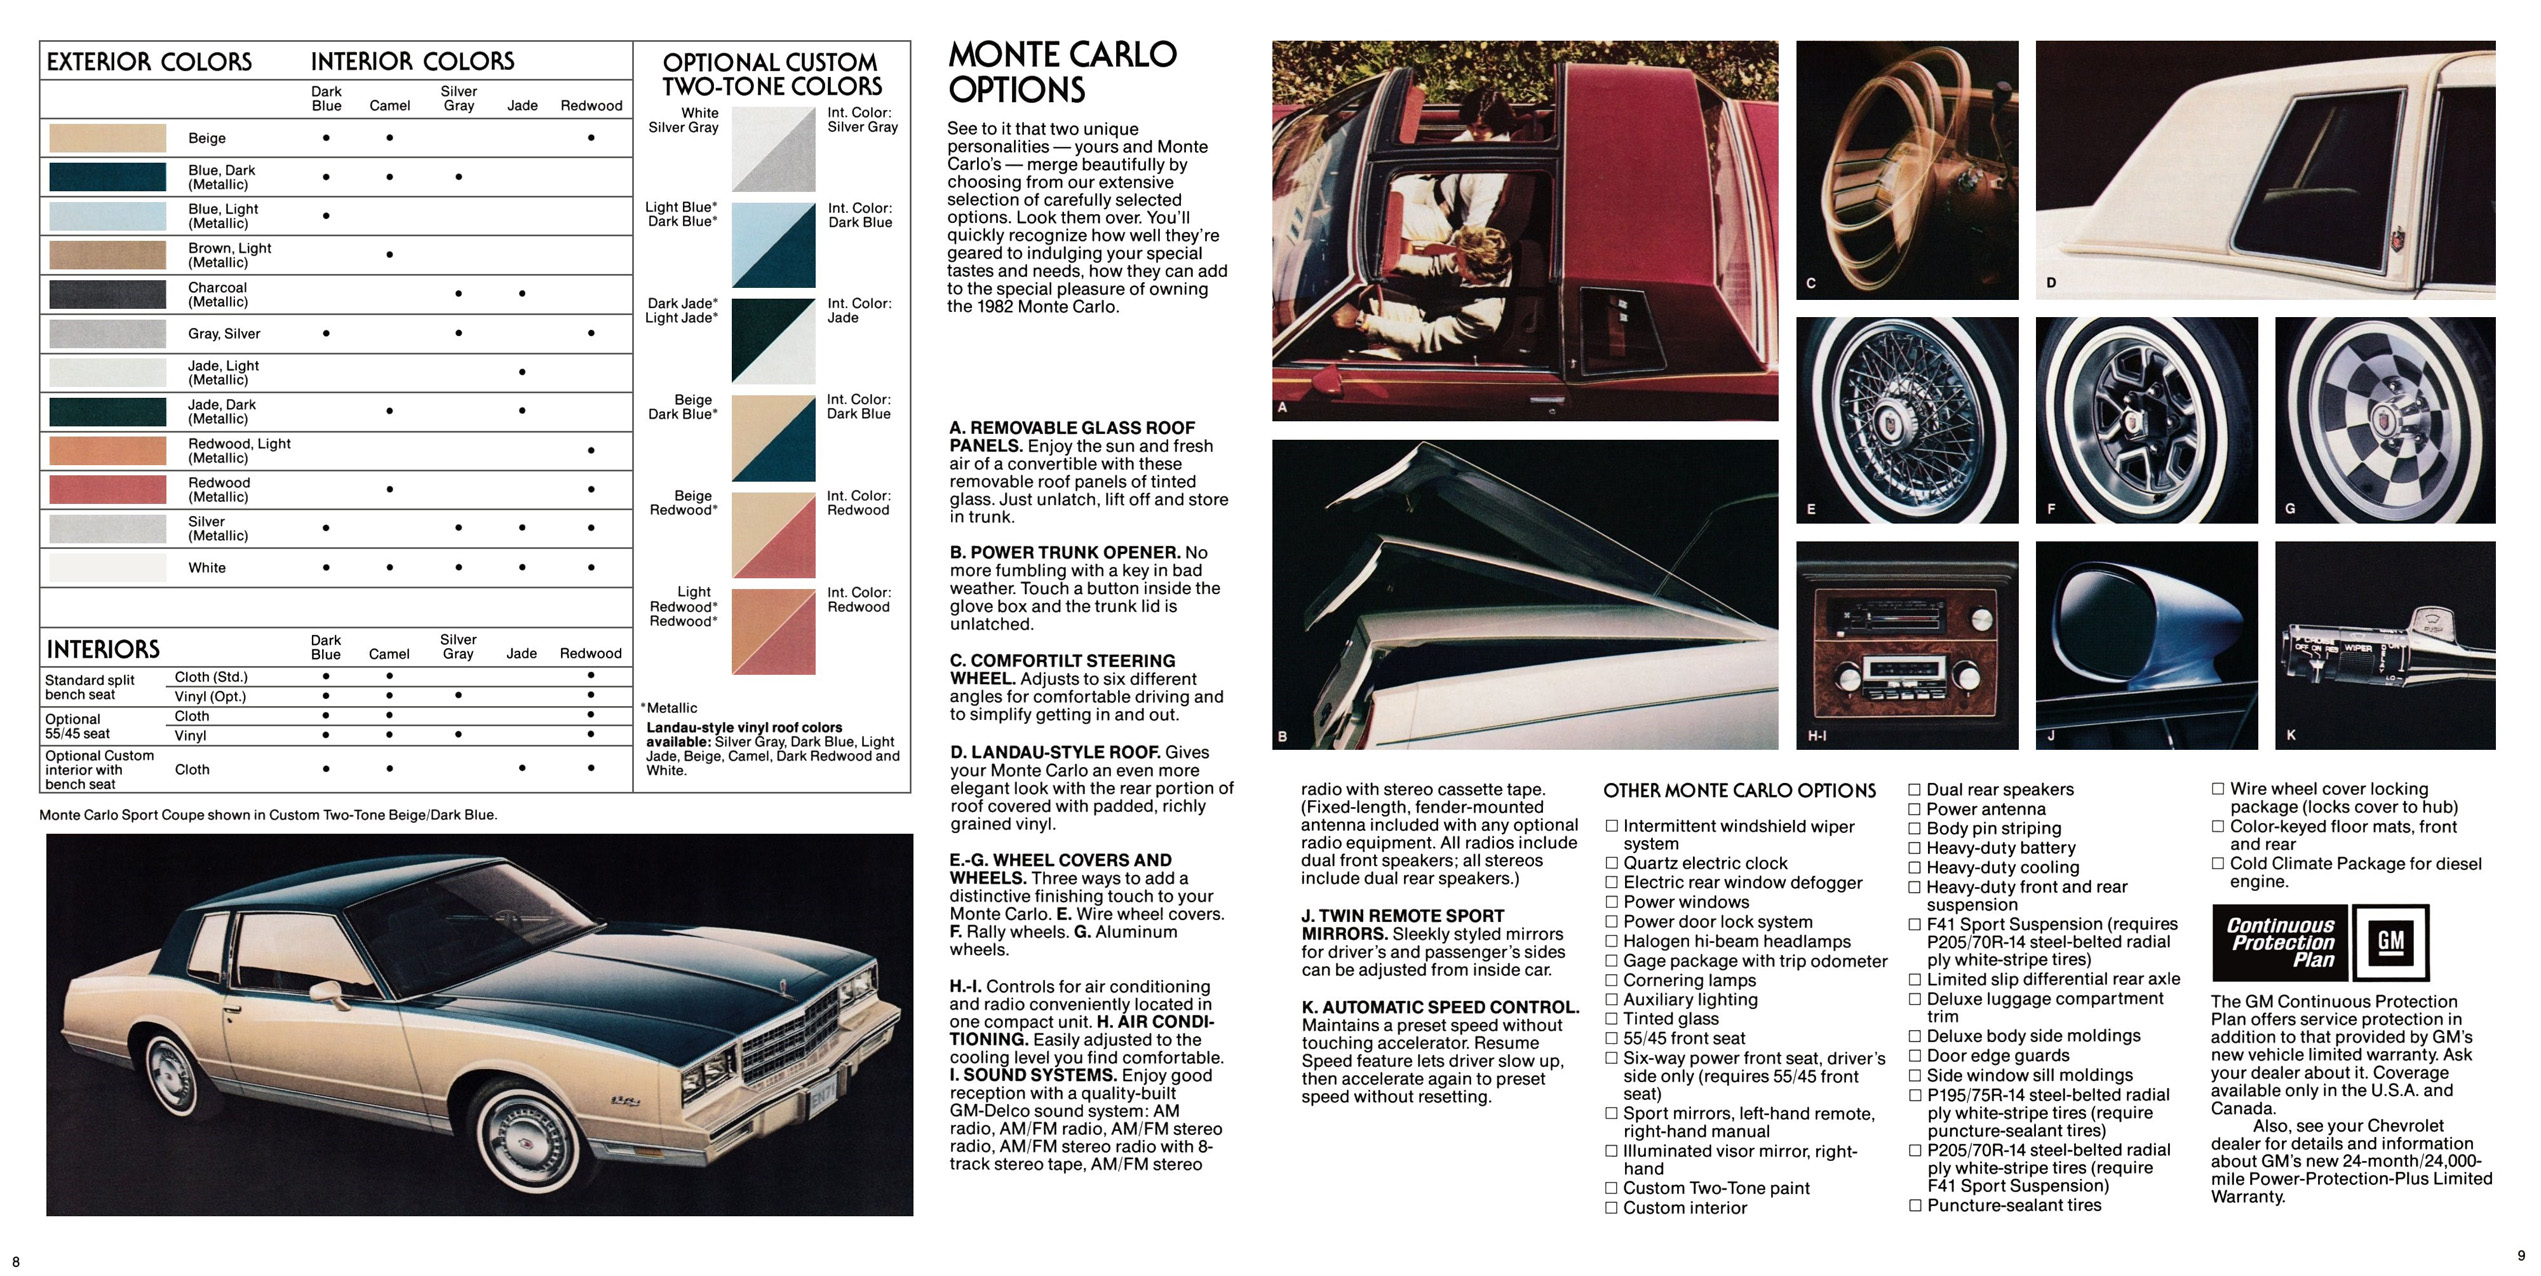 1982 Monte Carlo OEM Brochure (5)